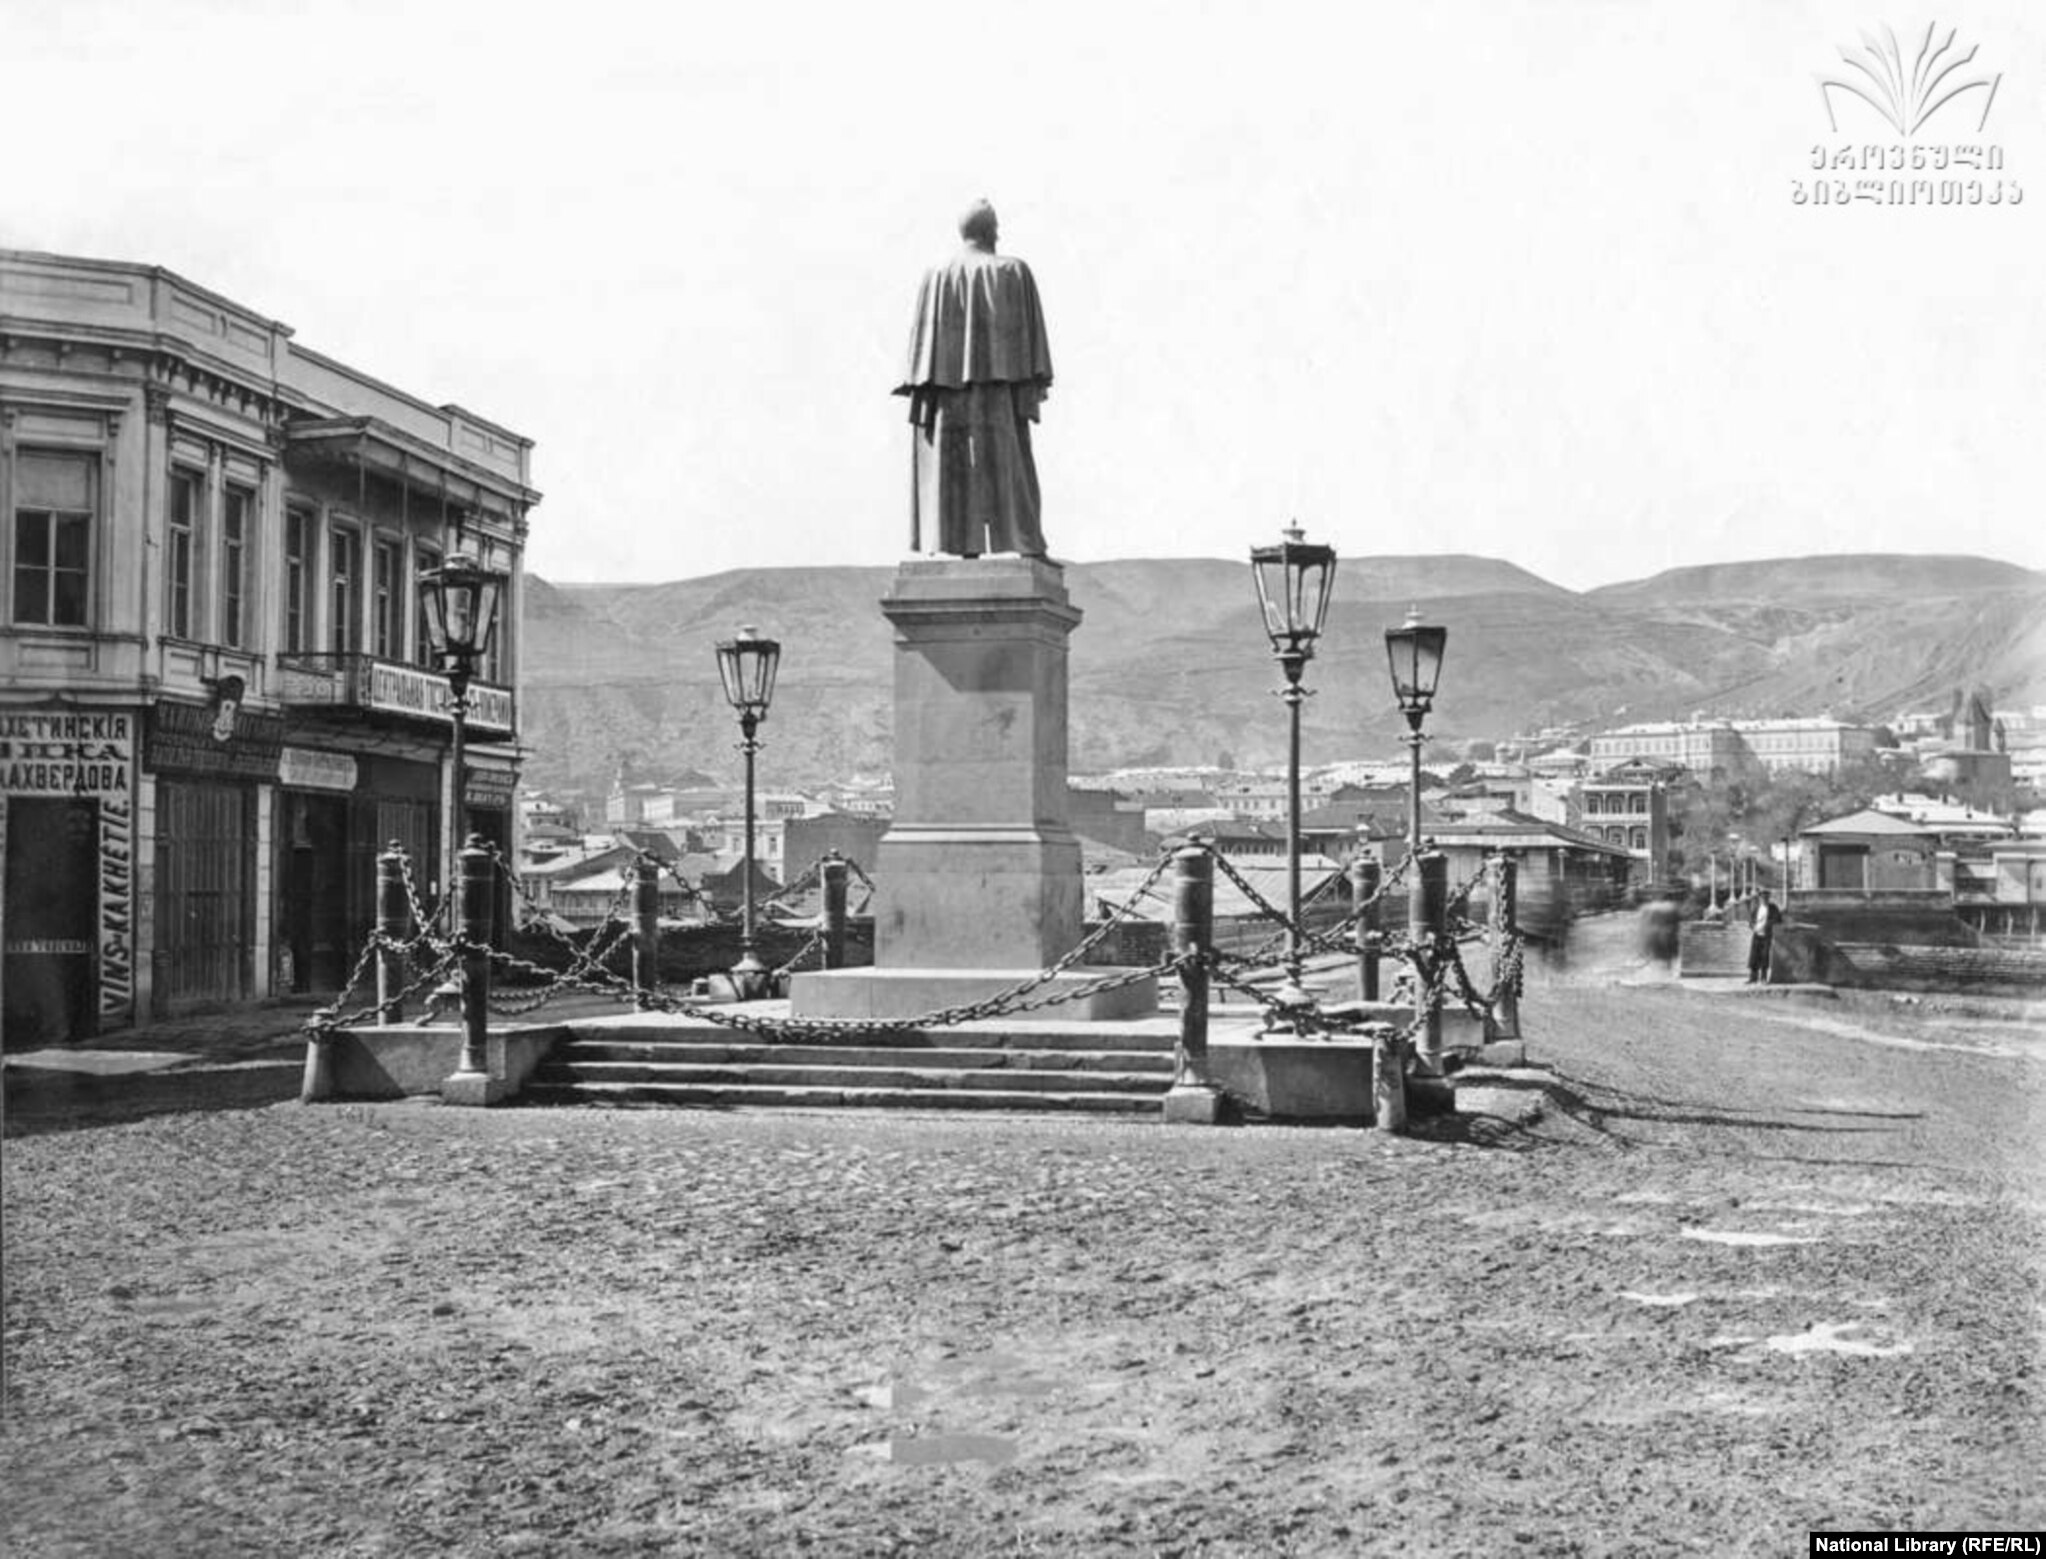 მიხეილ ვორონცოვის ძეგლი, რომელიც 1867 წლის 25 მარტს გაიხსნა, იყო პირველი ბრინჯაოში ჩამოსხმული სკულპტურა თბილისში. საბჭოთა ოკუპაციას შემდეგ 1922 წელს ბოლშევიკებმა ძეგლი ჩამოაგდეს და გადაადნეს.